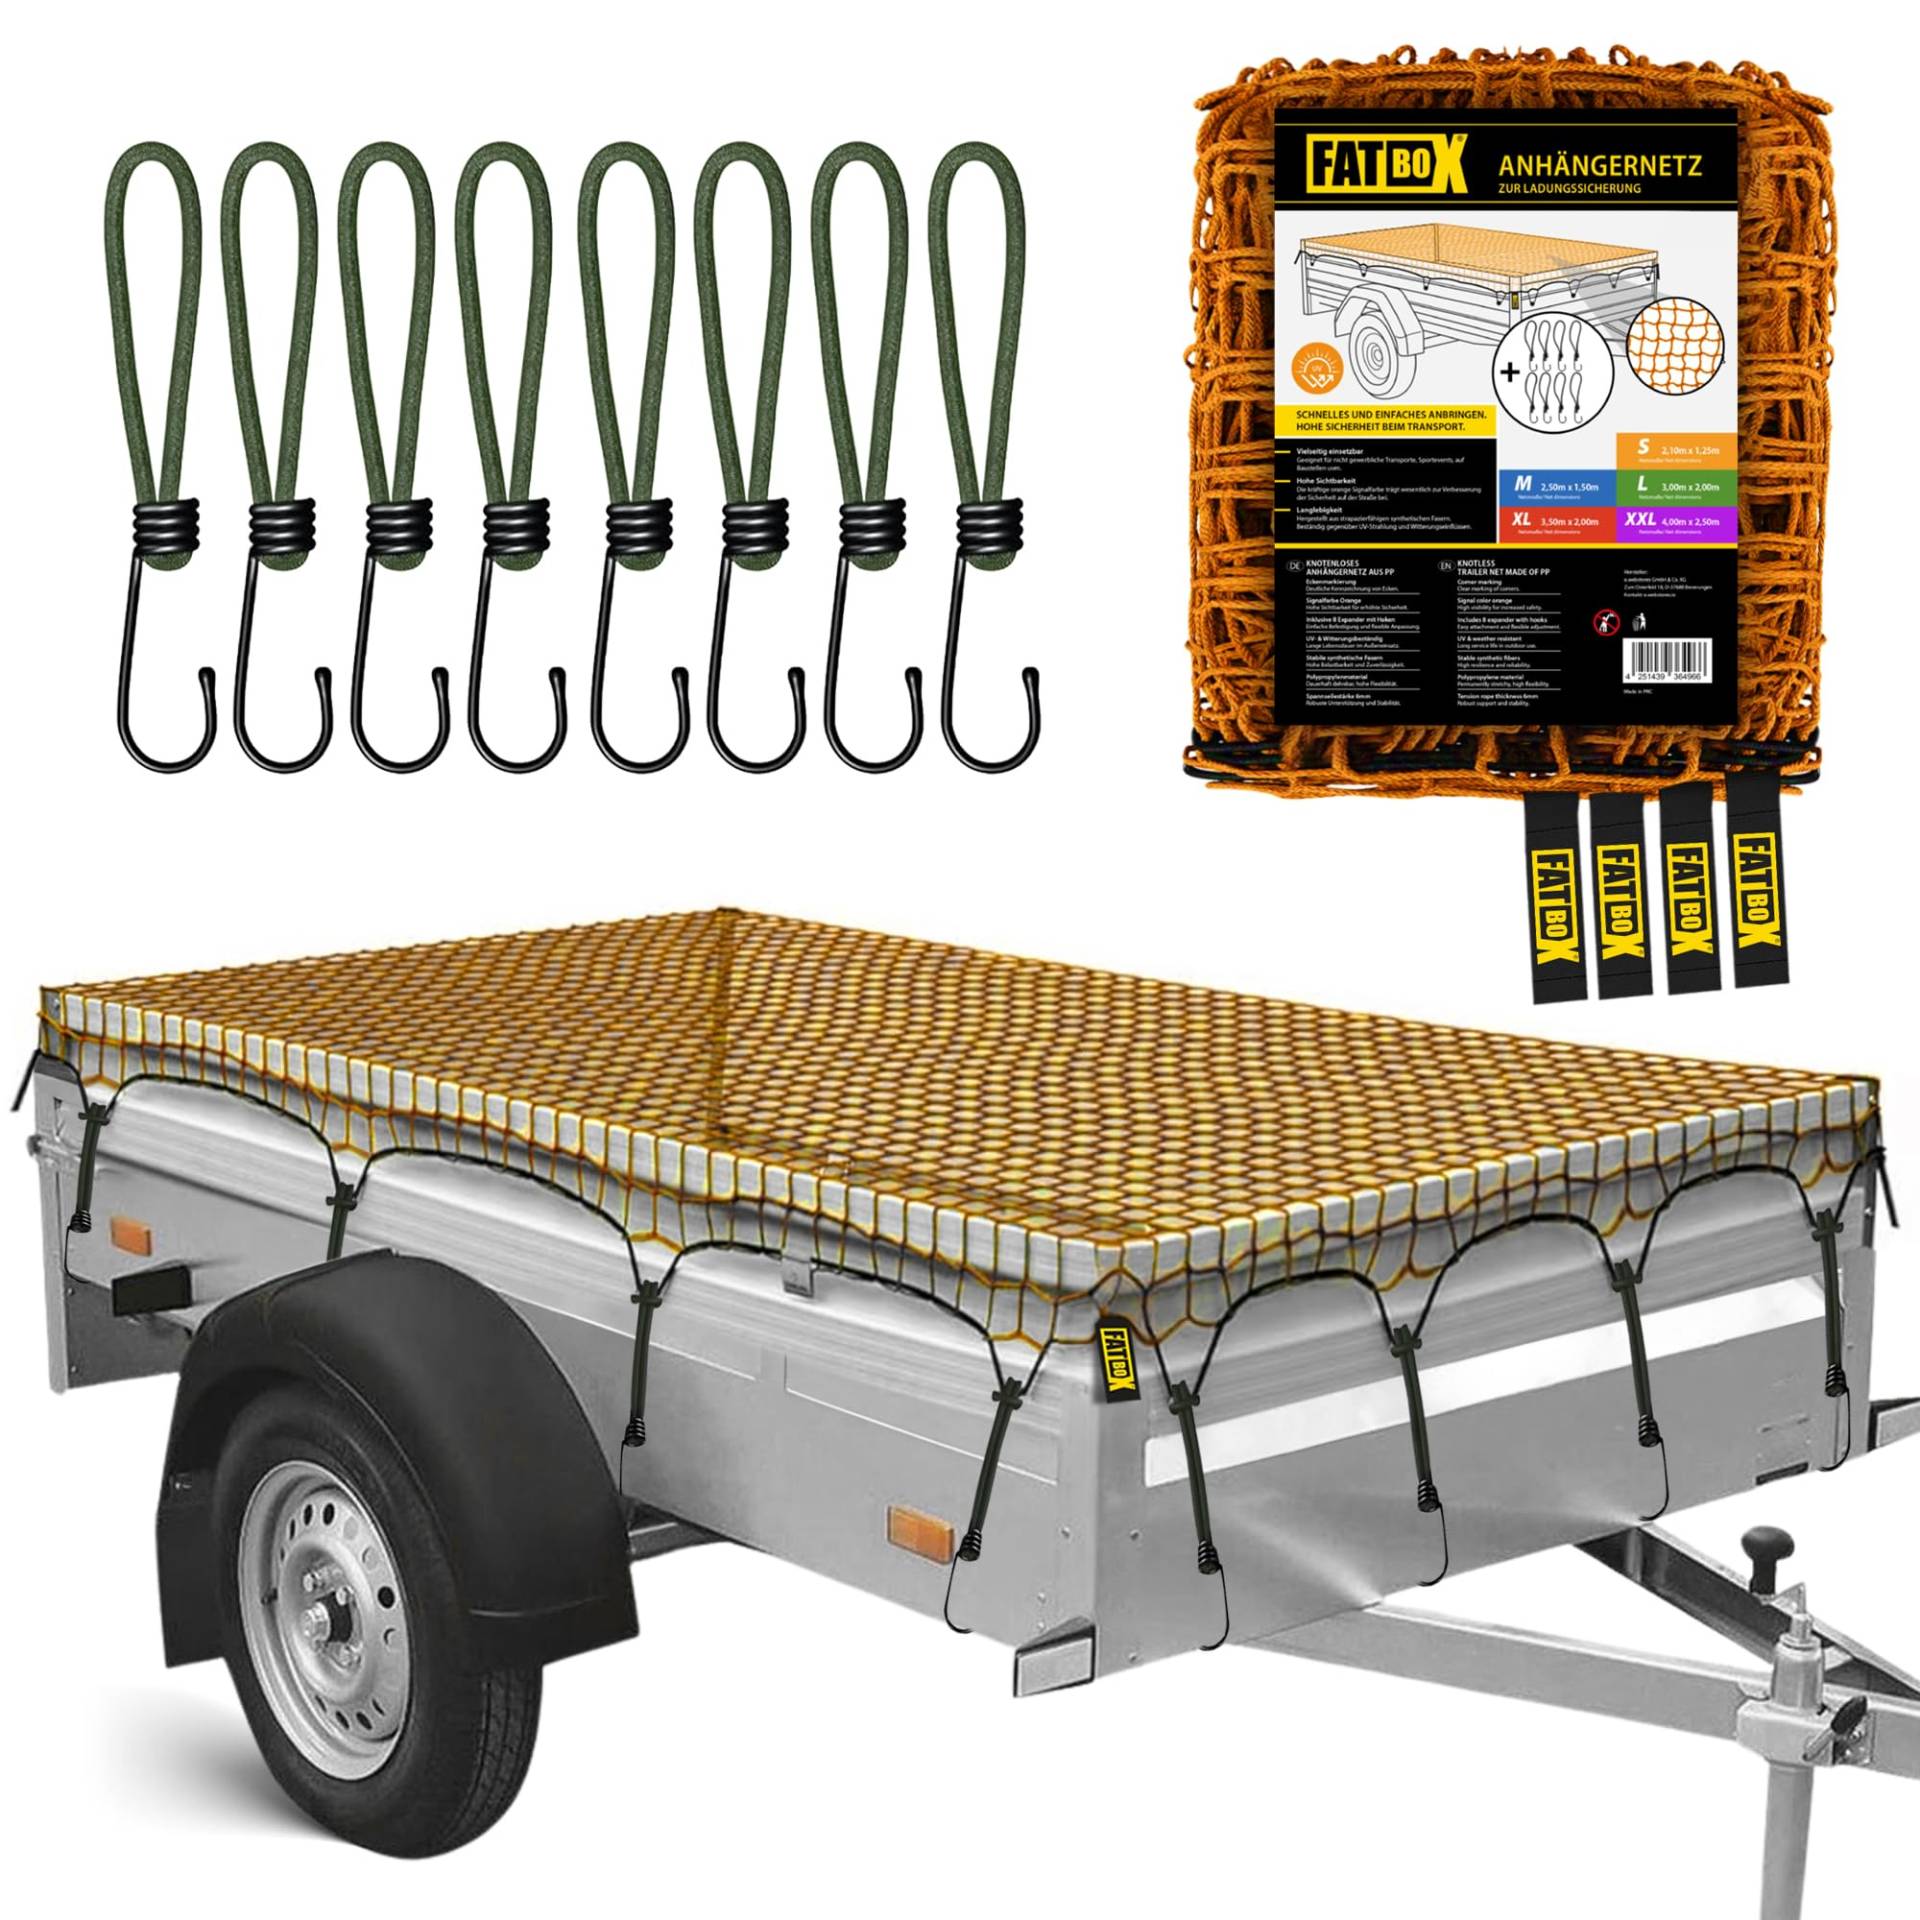 FATBOX Anhängernetz - DEHNBAR & ROBUST - Ladegutsicherung für Anhänger 1x2m bis 2x3m - UV-beständig - 4mm Kordel - Maschenweite 4cm (L - 3,00 x 2,00 m) von FATBOX